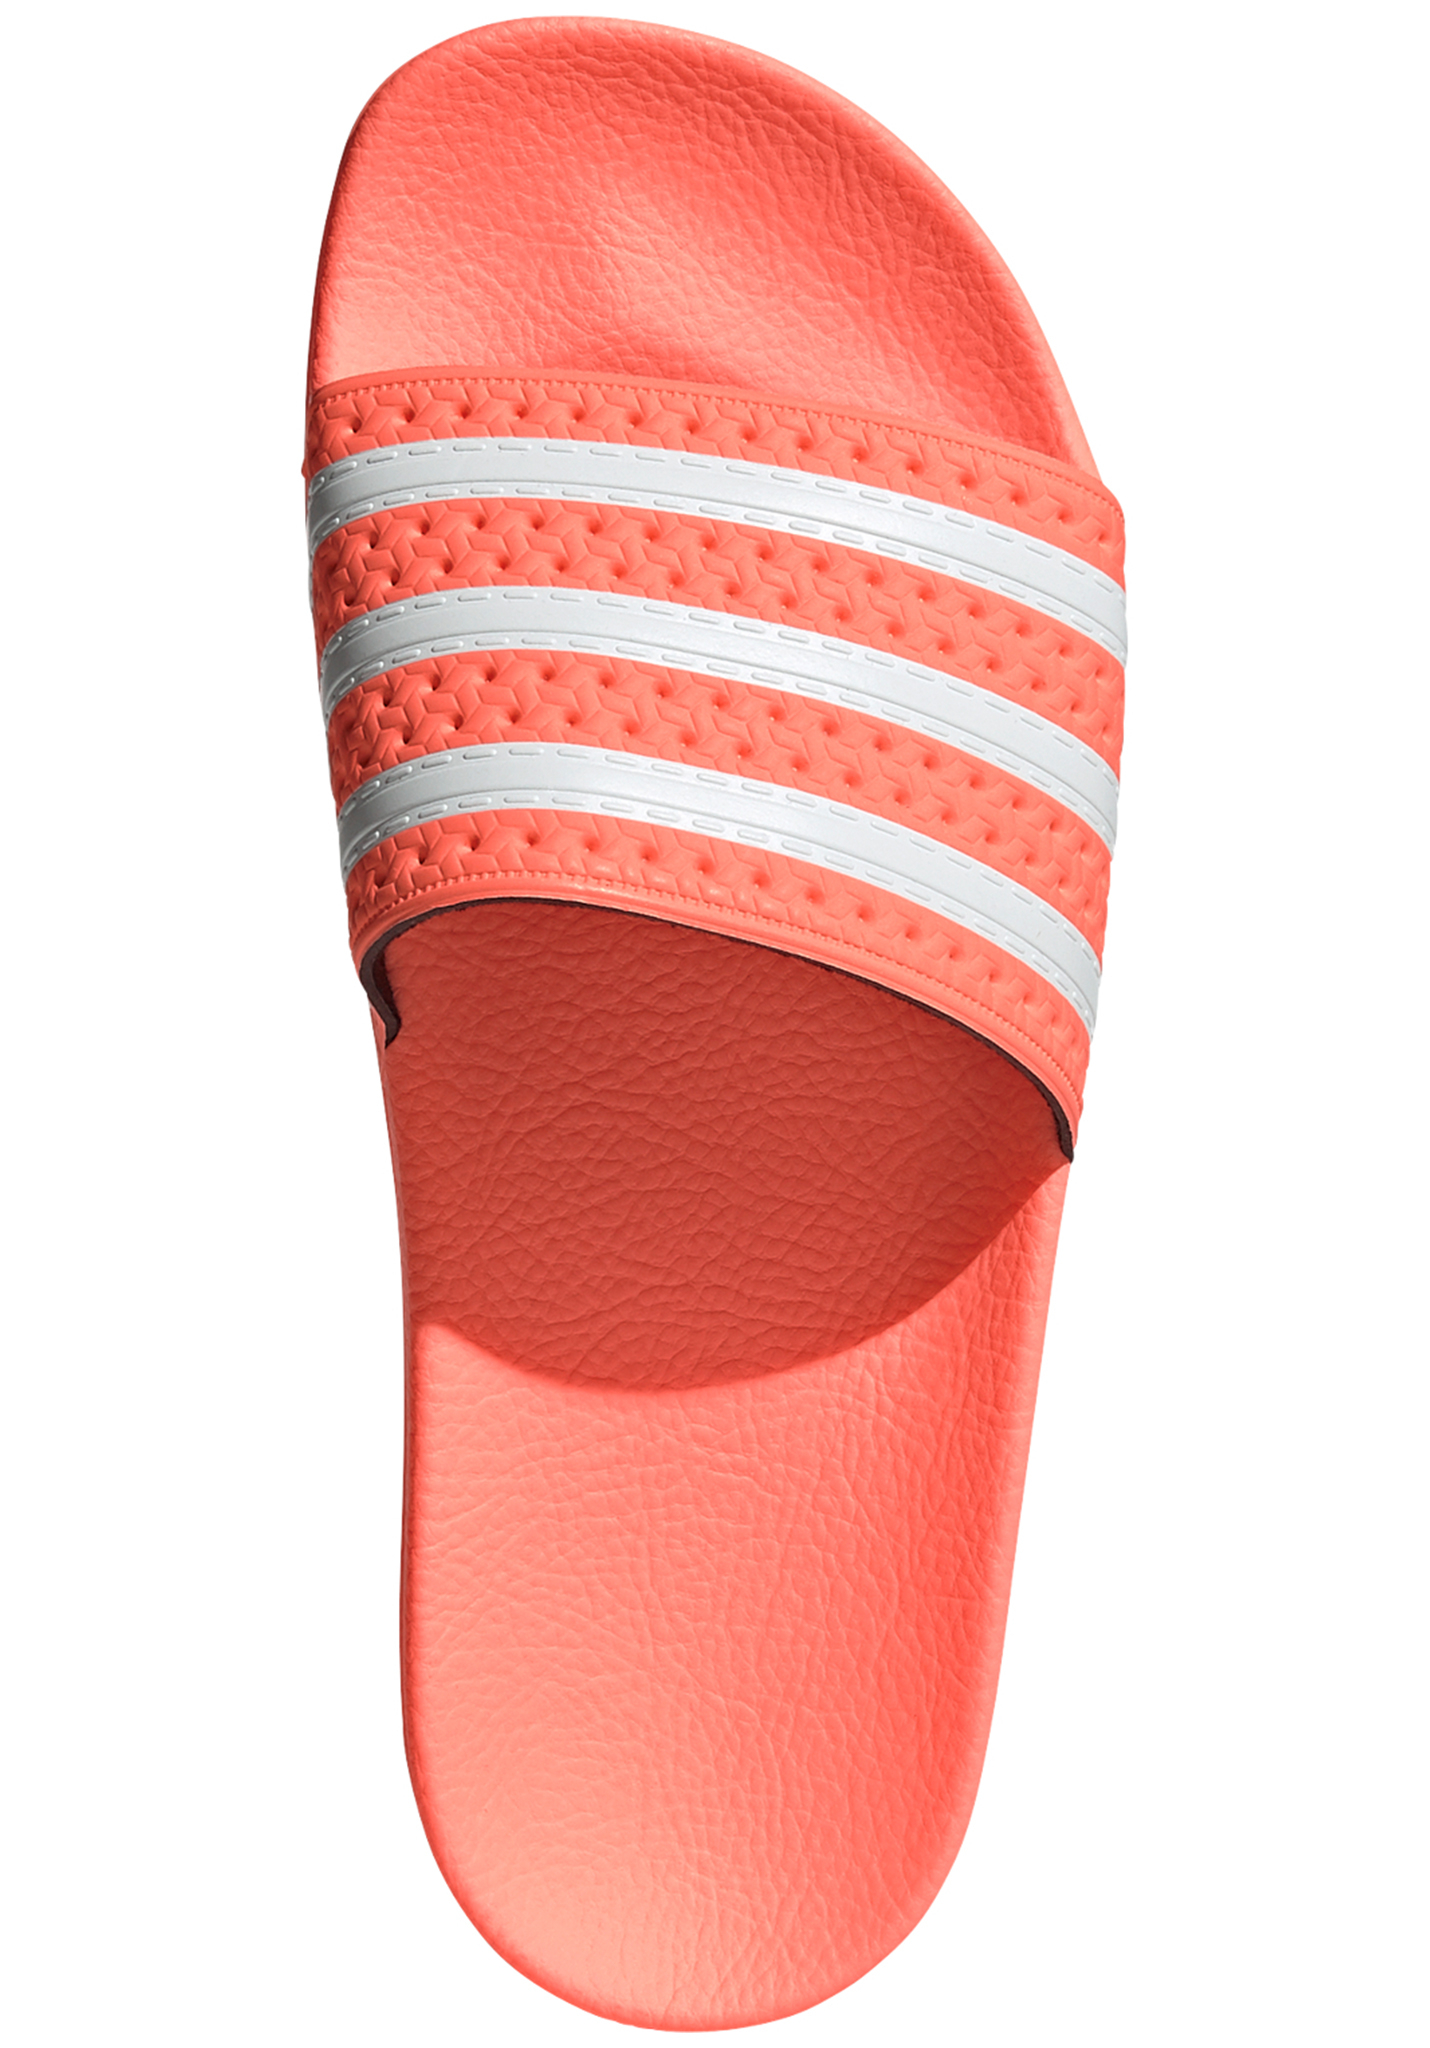 Adidas Originals Adilette W Pantoletten orange 39 1/3